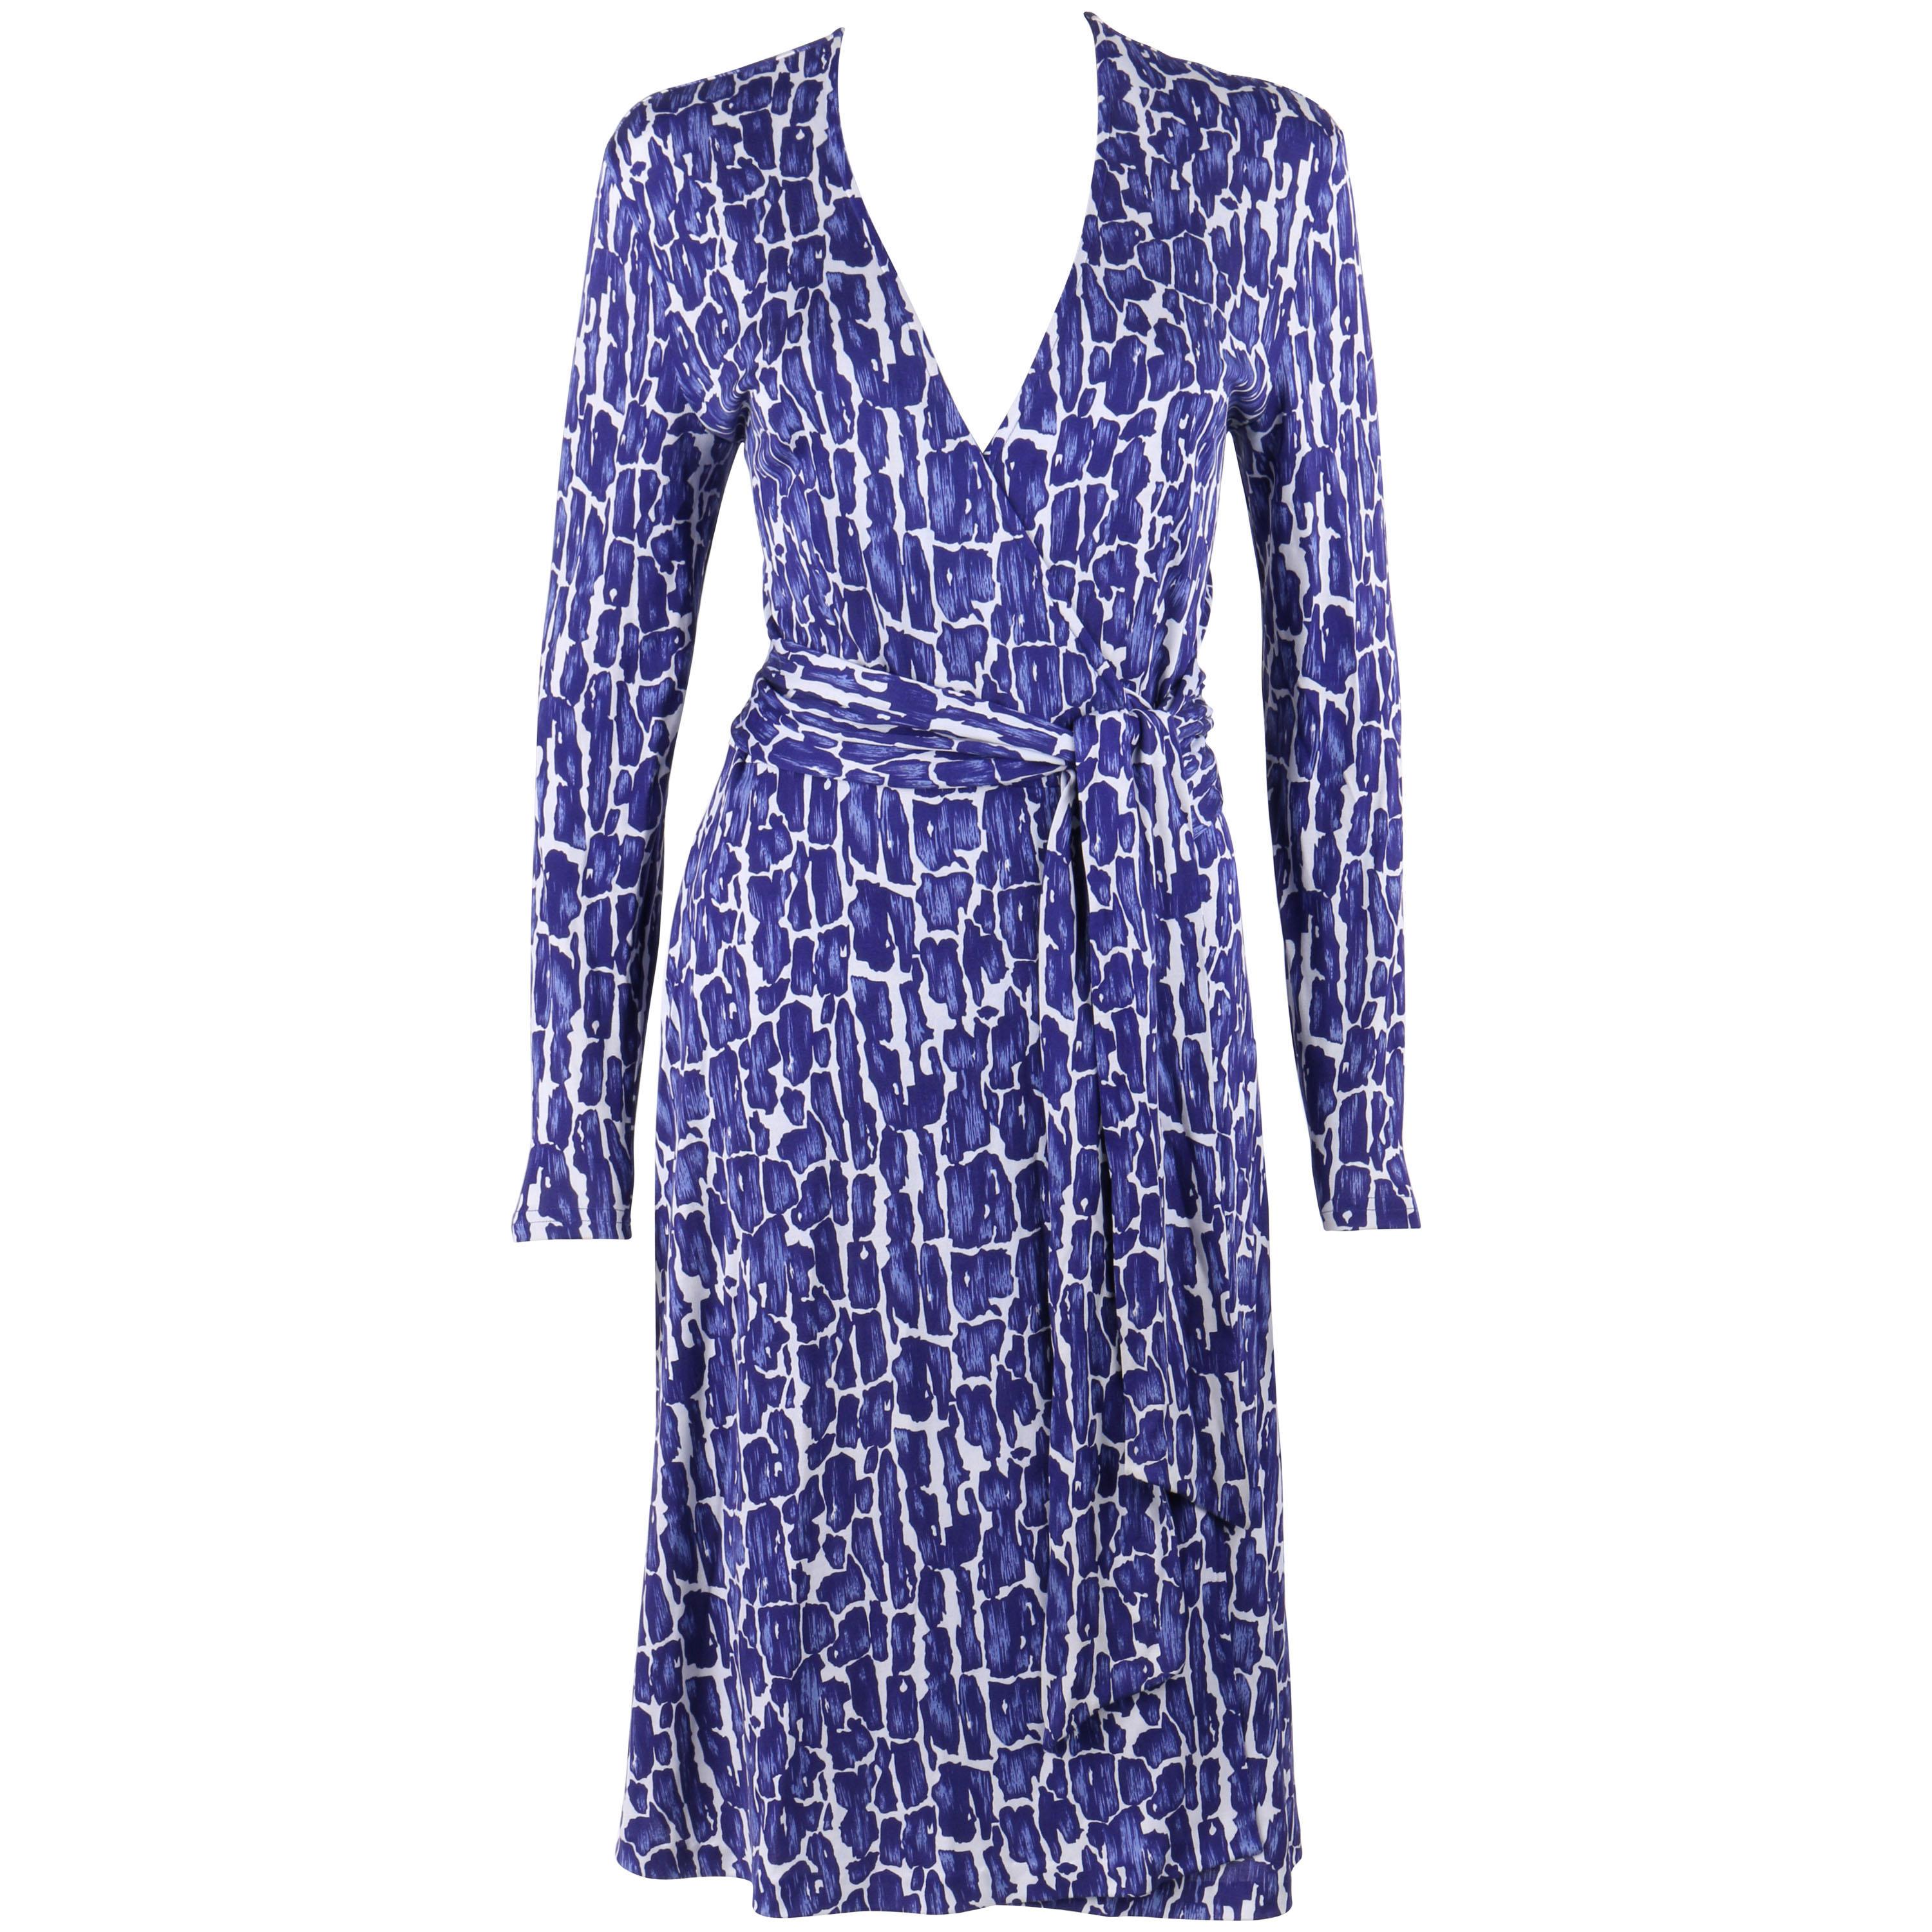 DIANE von FURSTENBERG c.1990's Silk Jersey Abstract Print Blue White Wrap Dress